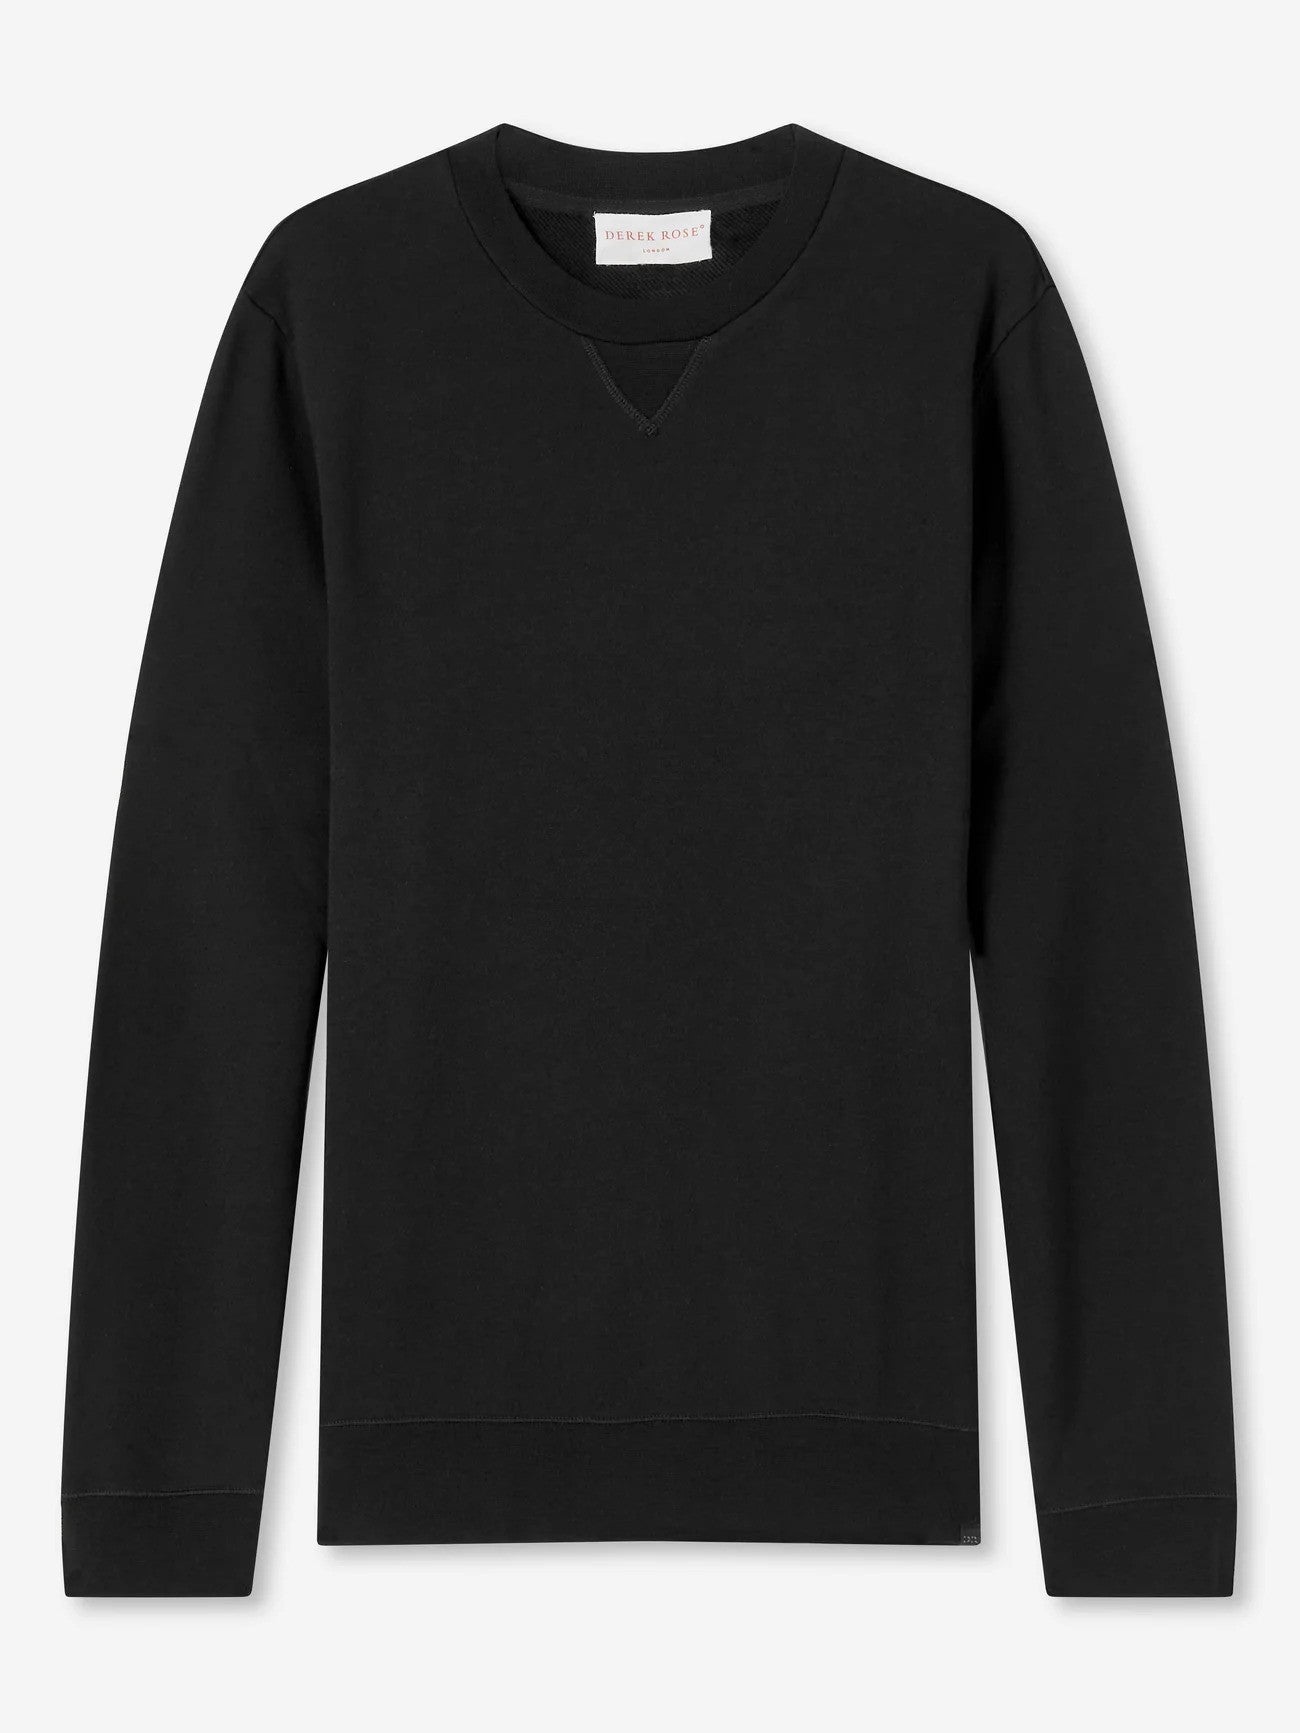 Derek Rose | Le sweat-shirt ''QUINN'' en coton modal   - Noir